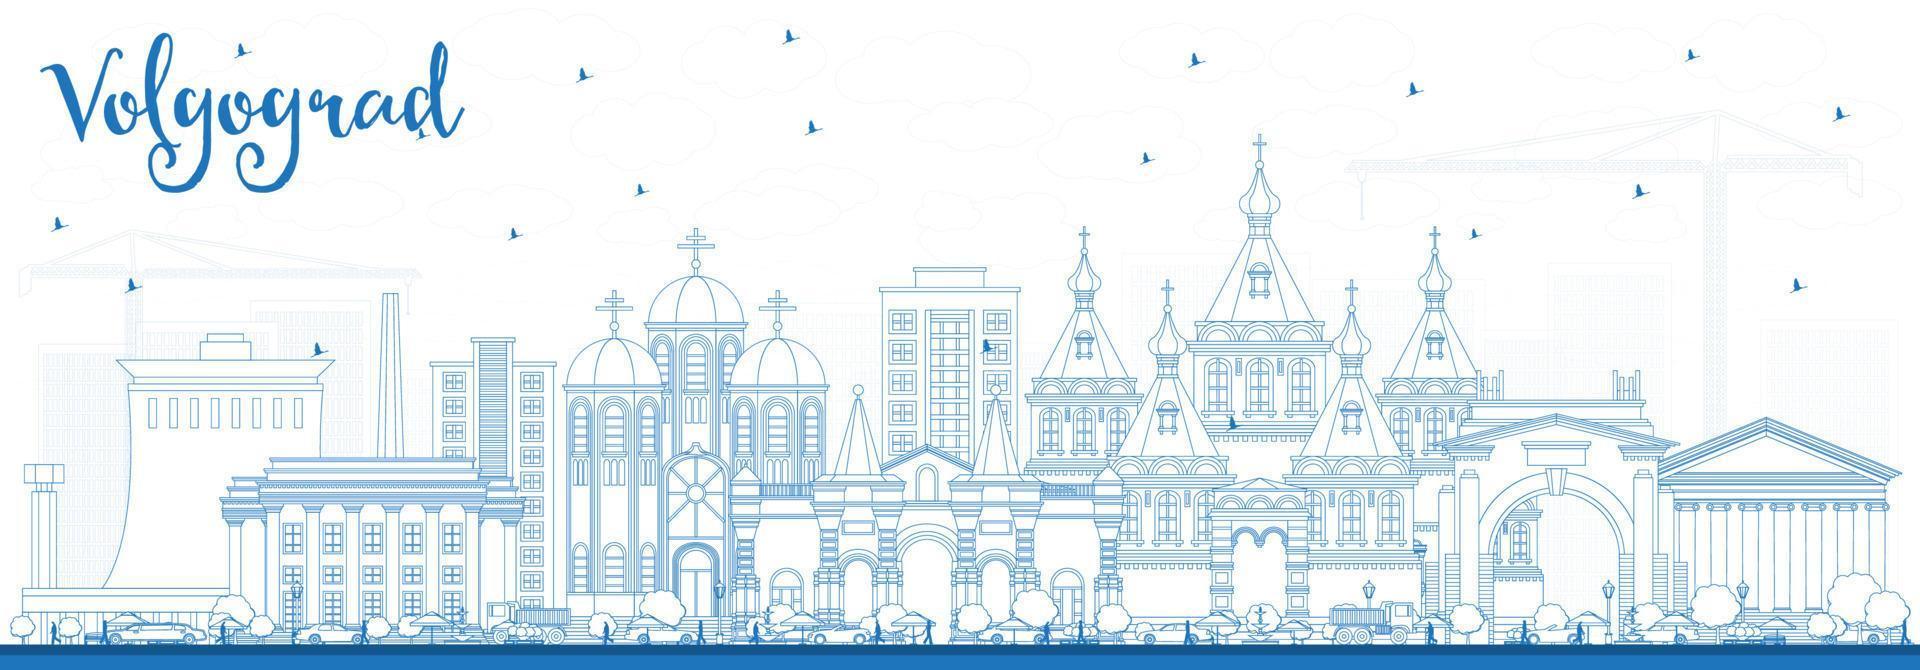 delinear el horizonte de la ciudad de volgogrado rusia con edificios azules. vector